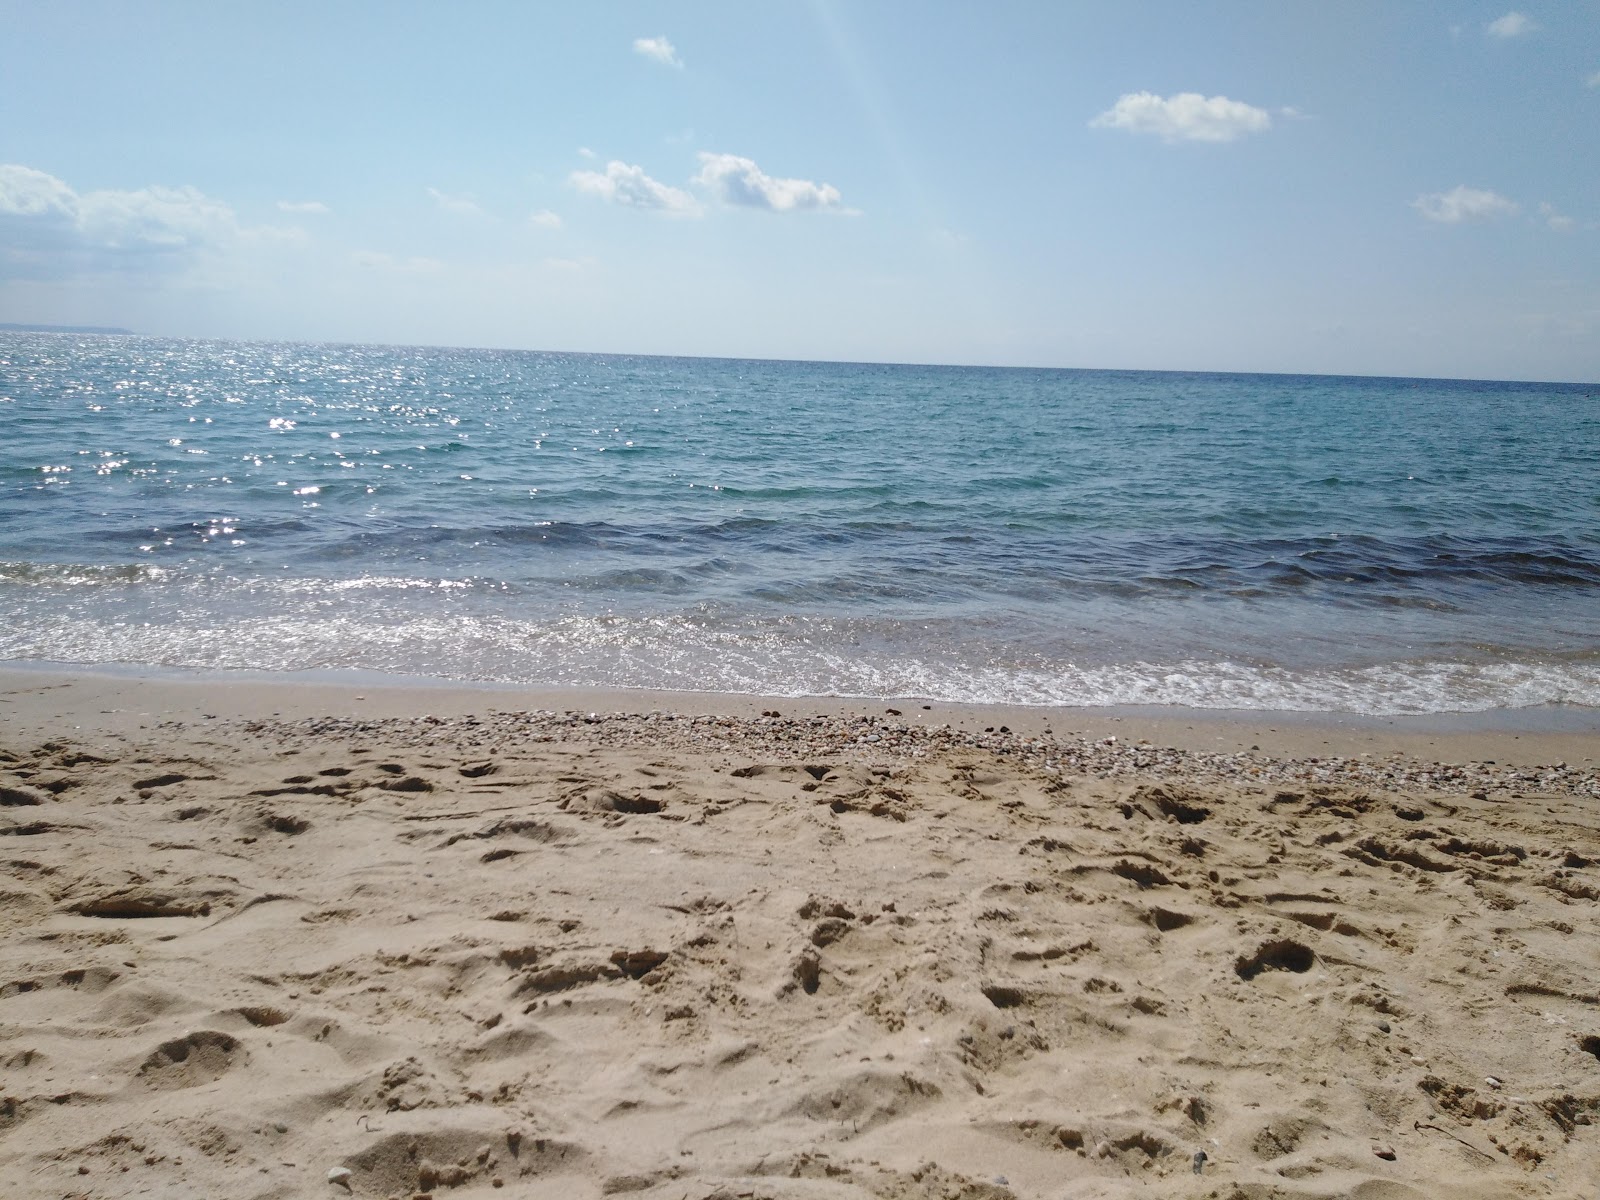 Fotografie cu Flogita beach - locul popular printre cunoscătorii de relaxare